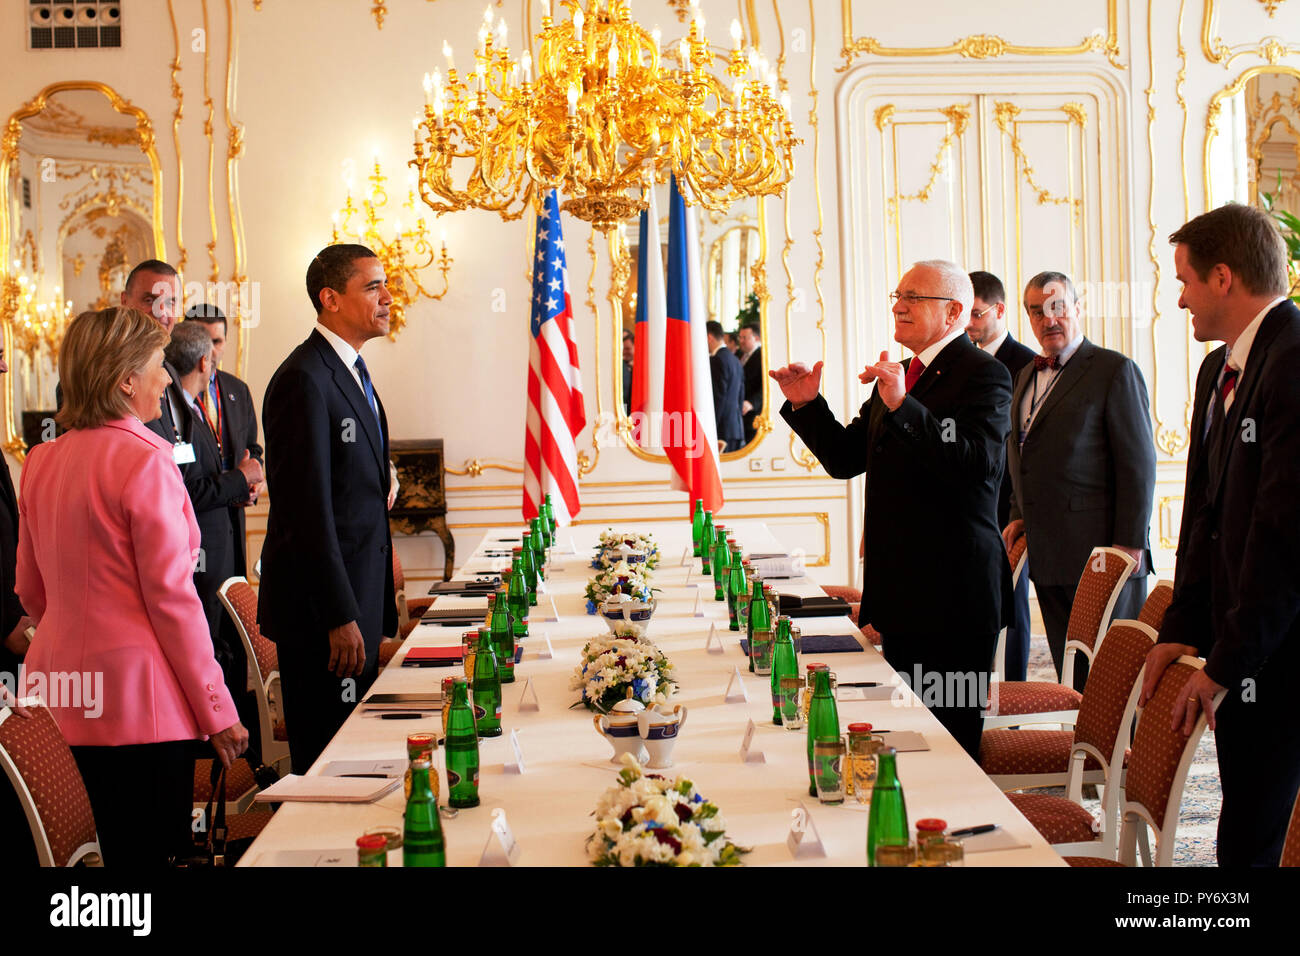 Präsident Barack Obama sieht man bei einem gemeinsamen bilateralen Treffen mit Präsident Vaclav Klaus und Ministerpräsident Mirek Topolanek auf der Prager Burg, Prag, Tschechische Republik. Offiziellen White House Photo by Pete Souza Stockfoto